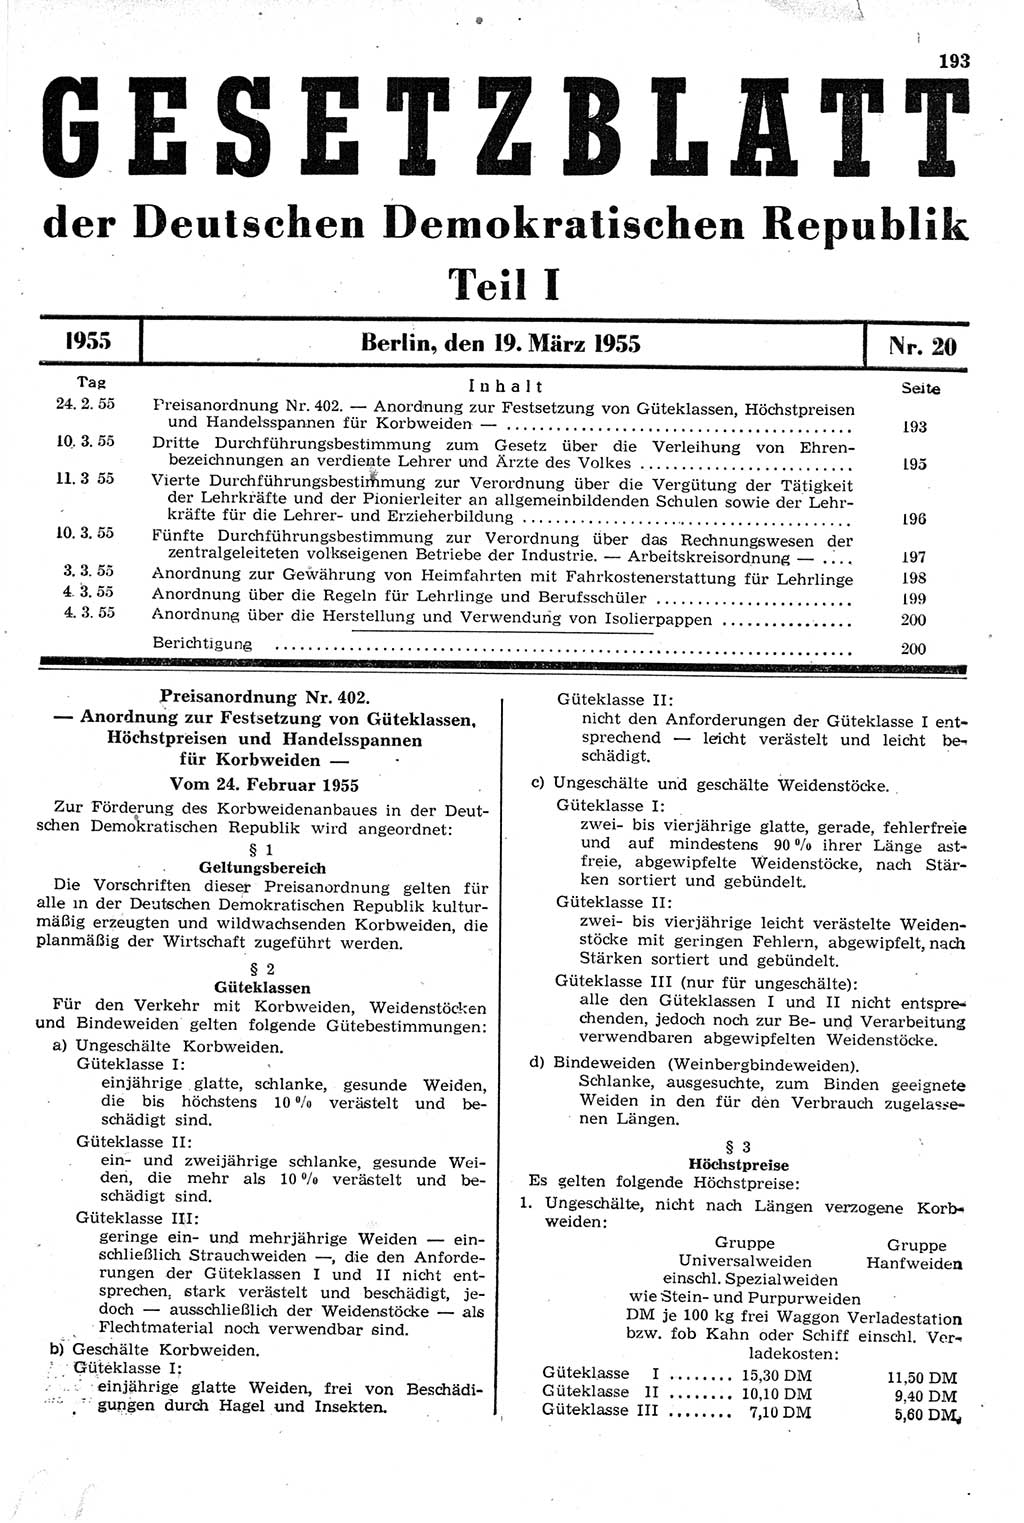 Gesetzblatt (GBl.) der Deutschen Demokratischen Republik (DDR) Teil Ⅰ 1955, Seite 193 (GBl. DDR Ⅰ 1955, S. 193)